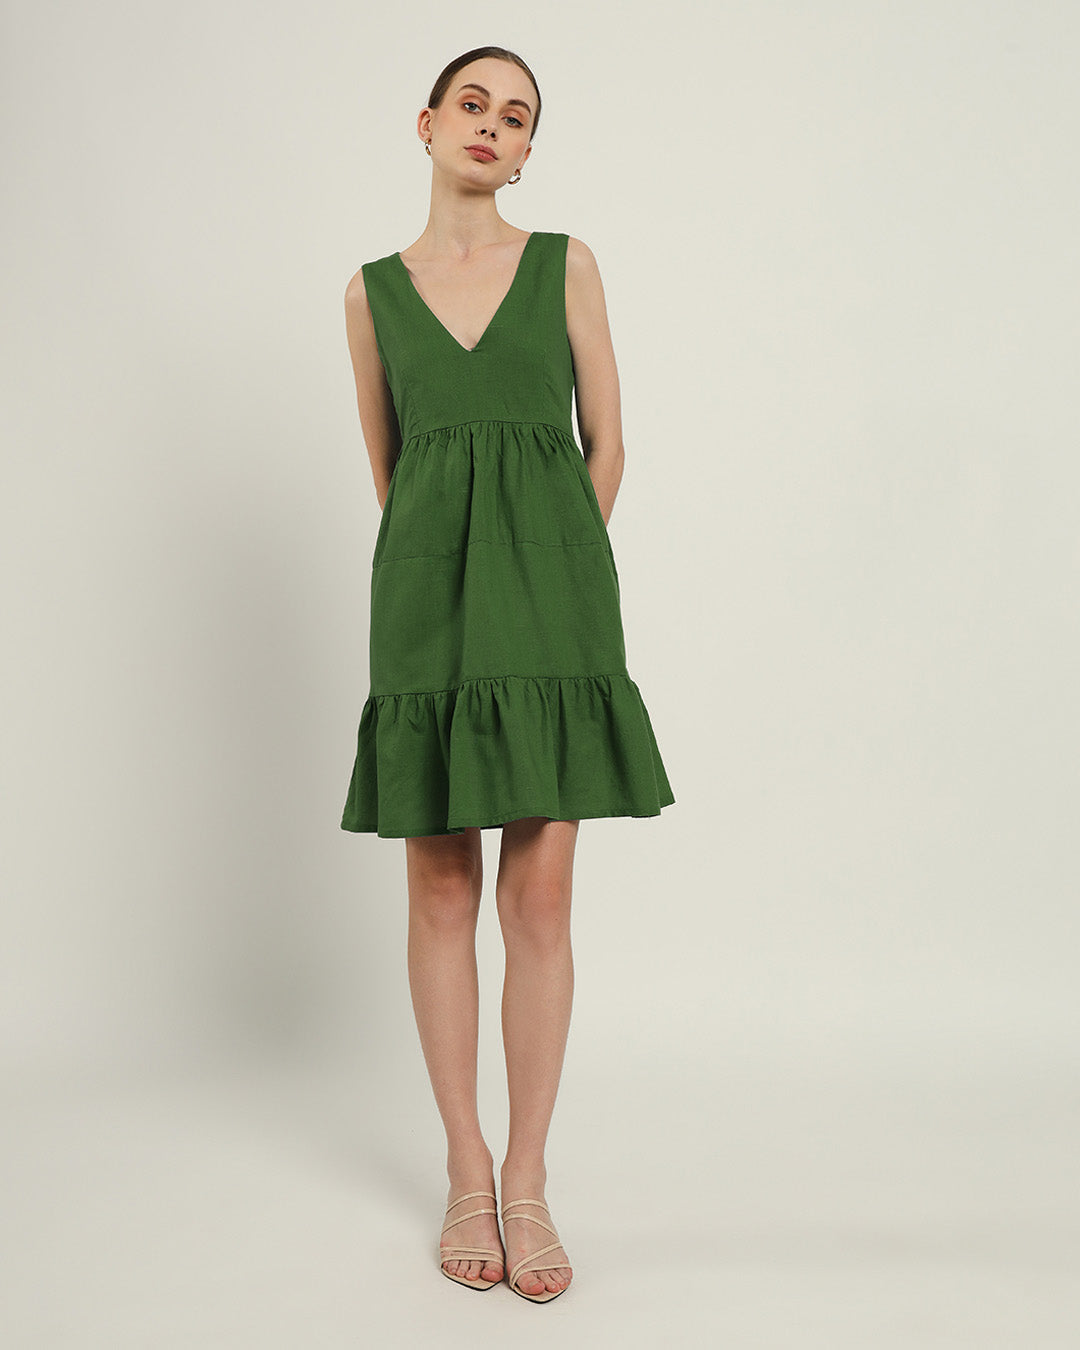 The Minsk Emerald Dress